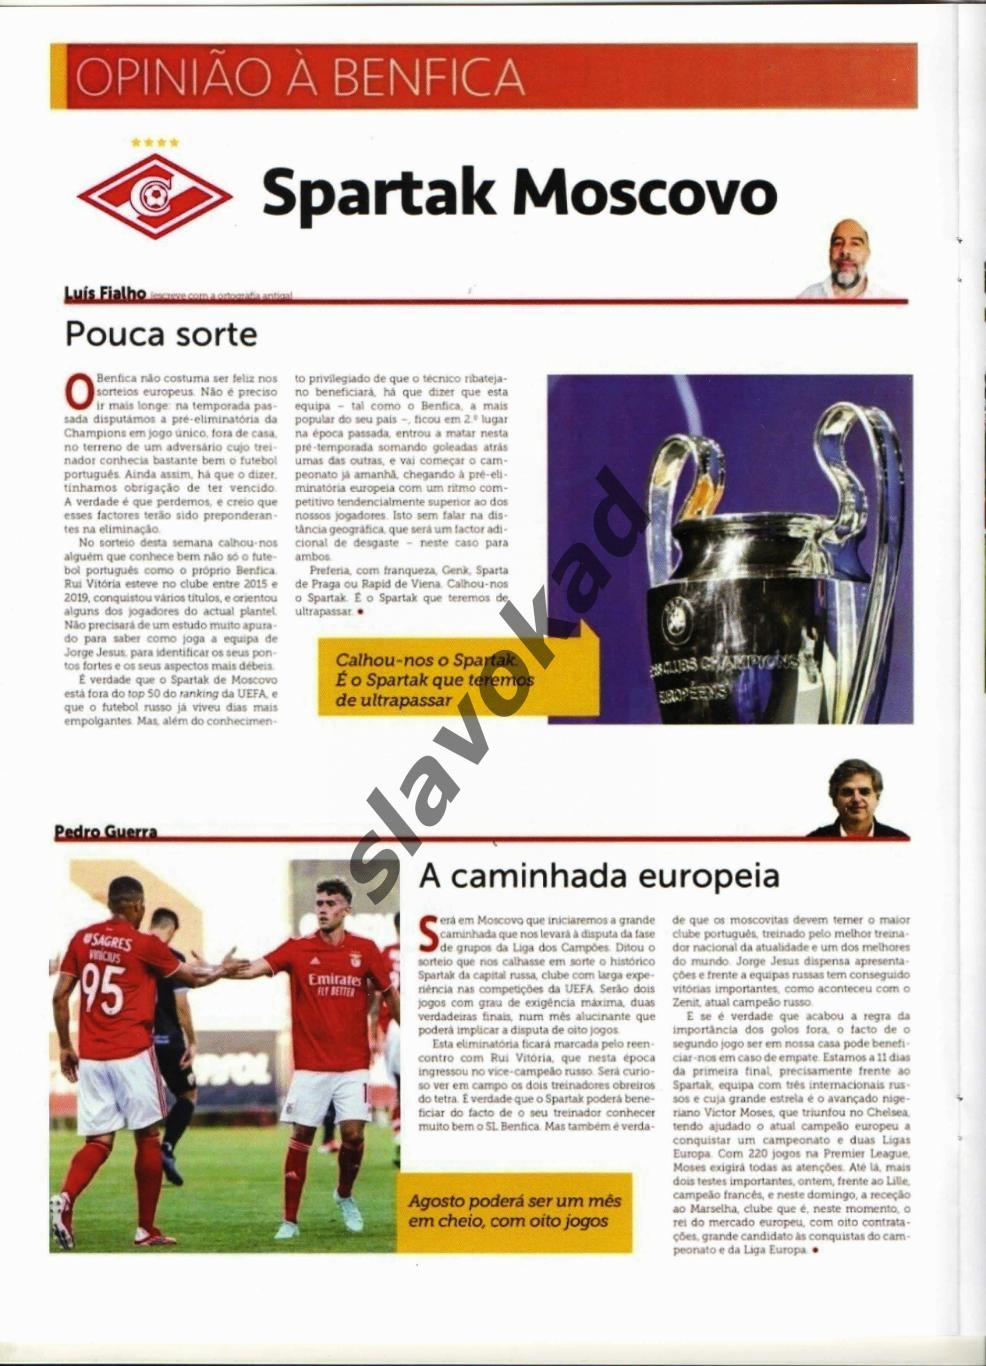 Бенфика Португалия - Спартак Москва 2021 - официальное издание O BENFICA 2